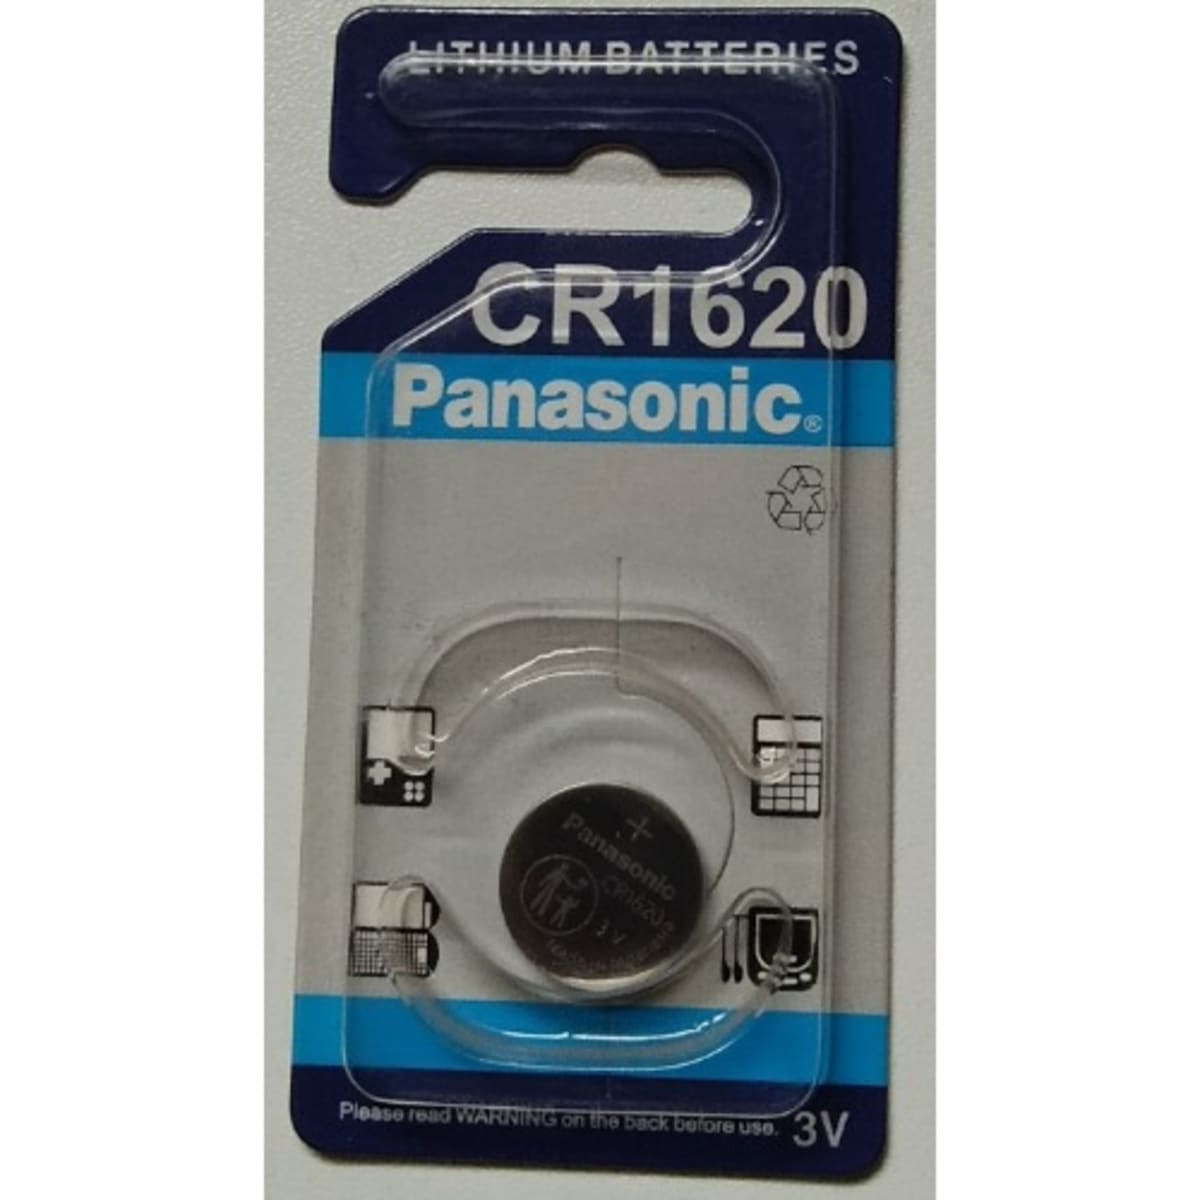 CR1620 - Panasonic Batteries - Battery, 3 V, Coin Cell